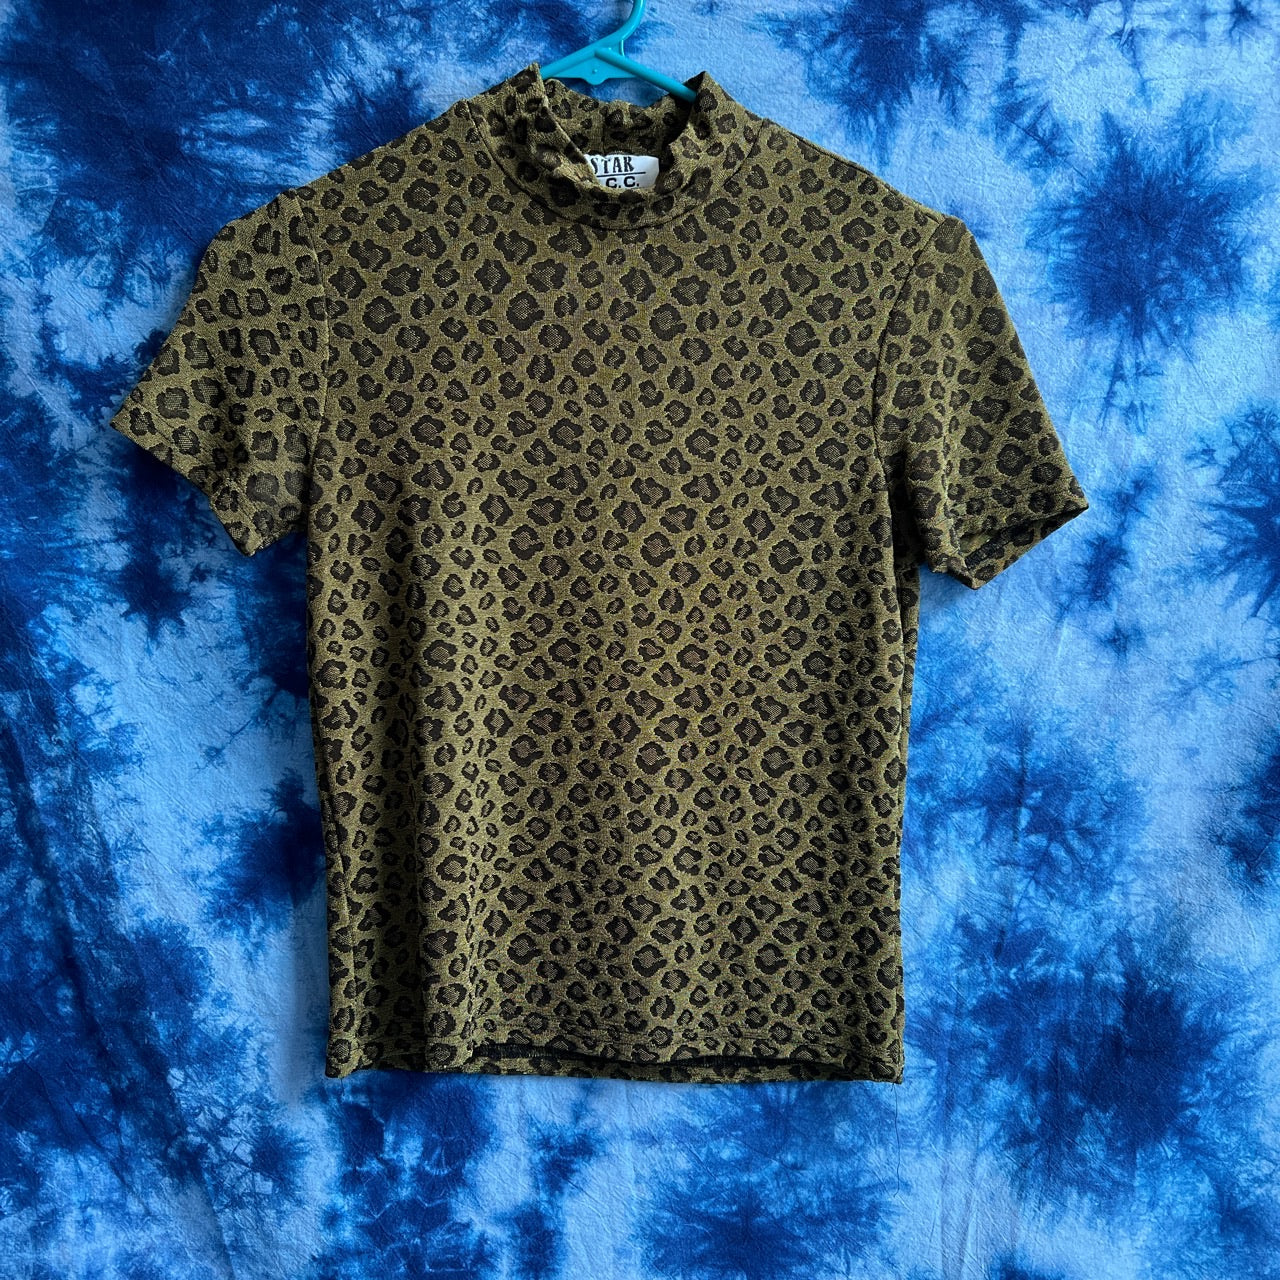 Sheer Cheetah Print Mock Neck (M/L)